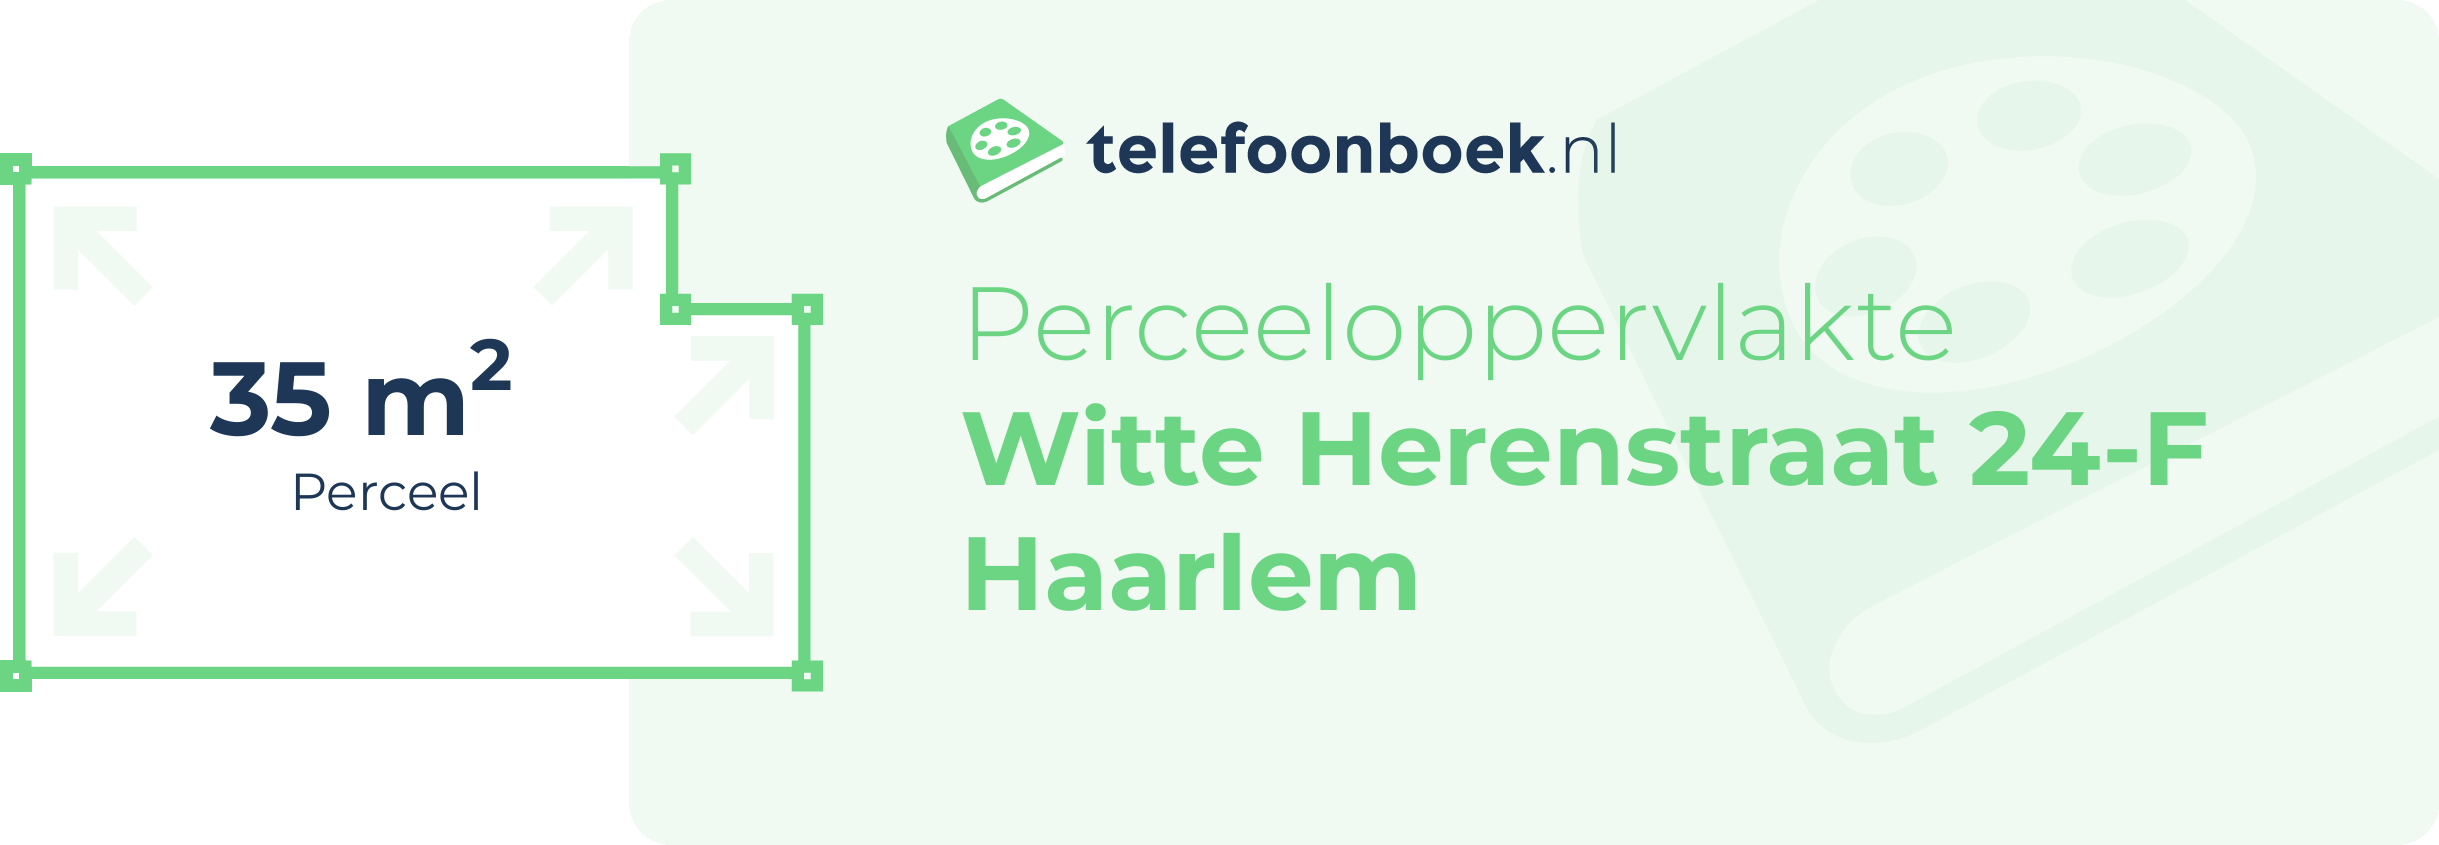 Perceeloppervlakte Witte Herenstraat 24-F Haarlem